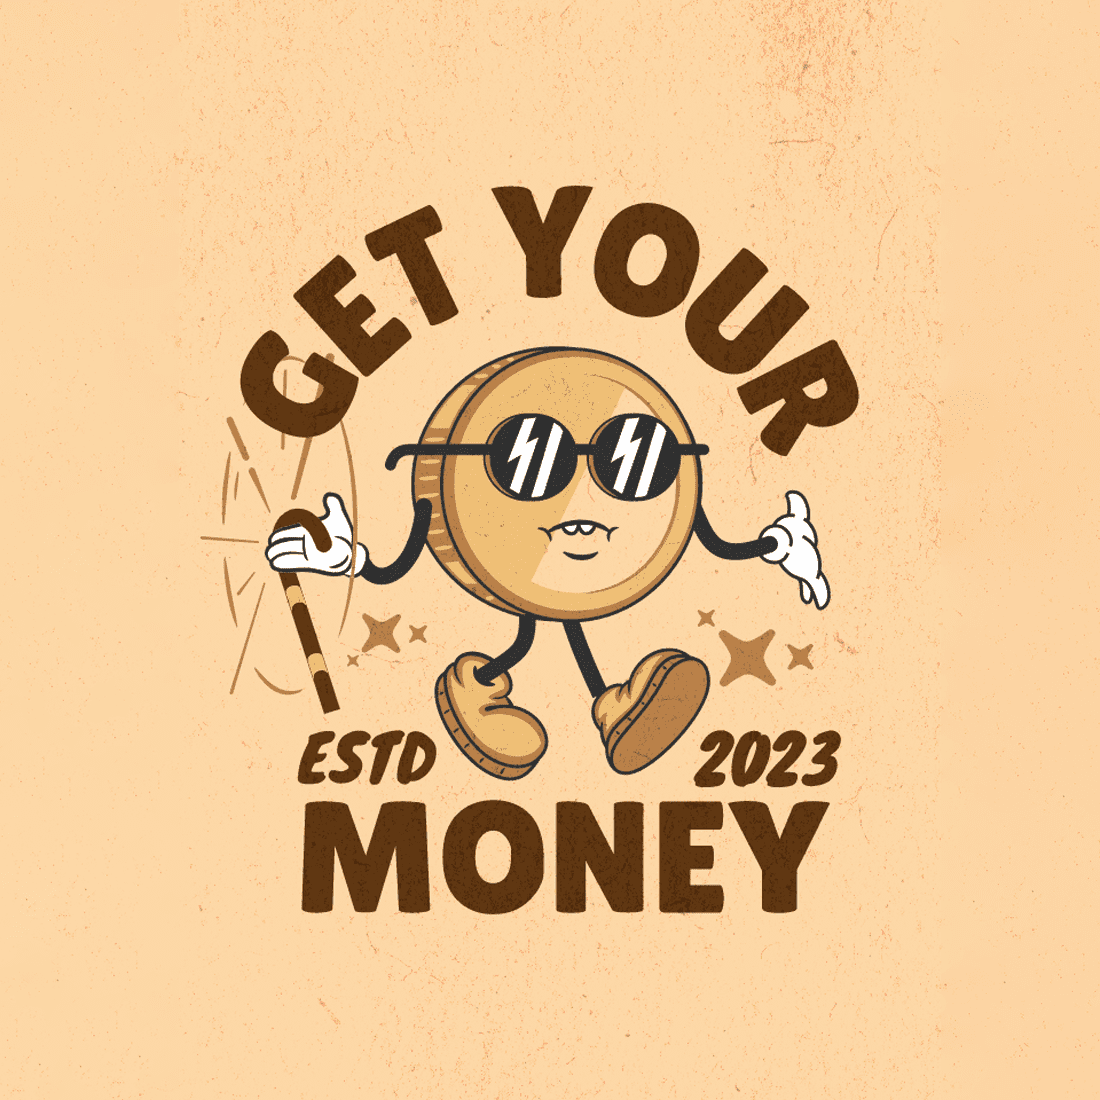 Get Your ESTD 2023 Money - Quotes T-Shirt Design preview image.